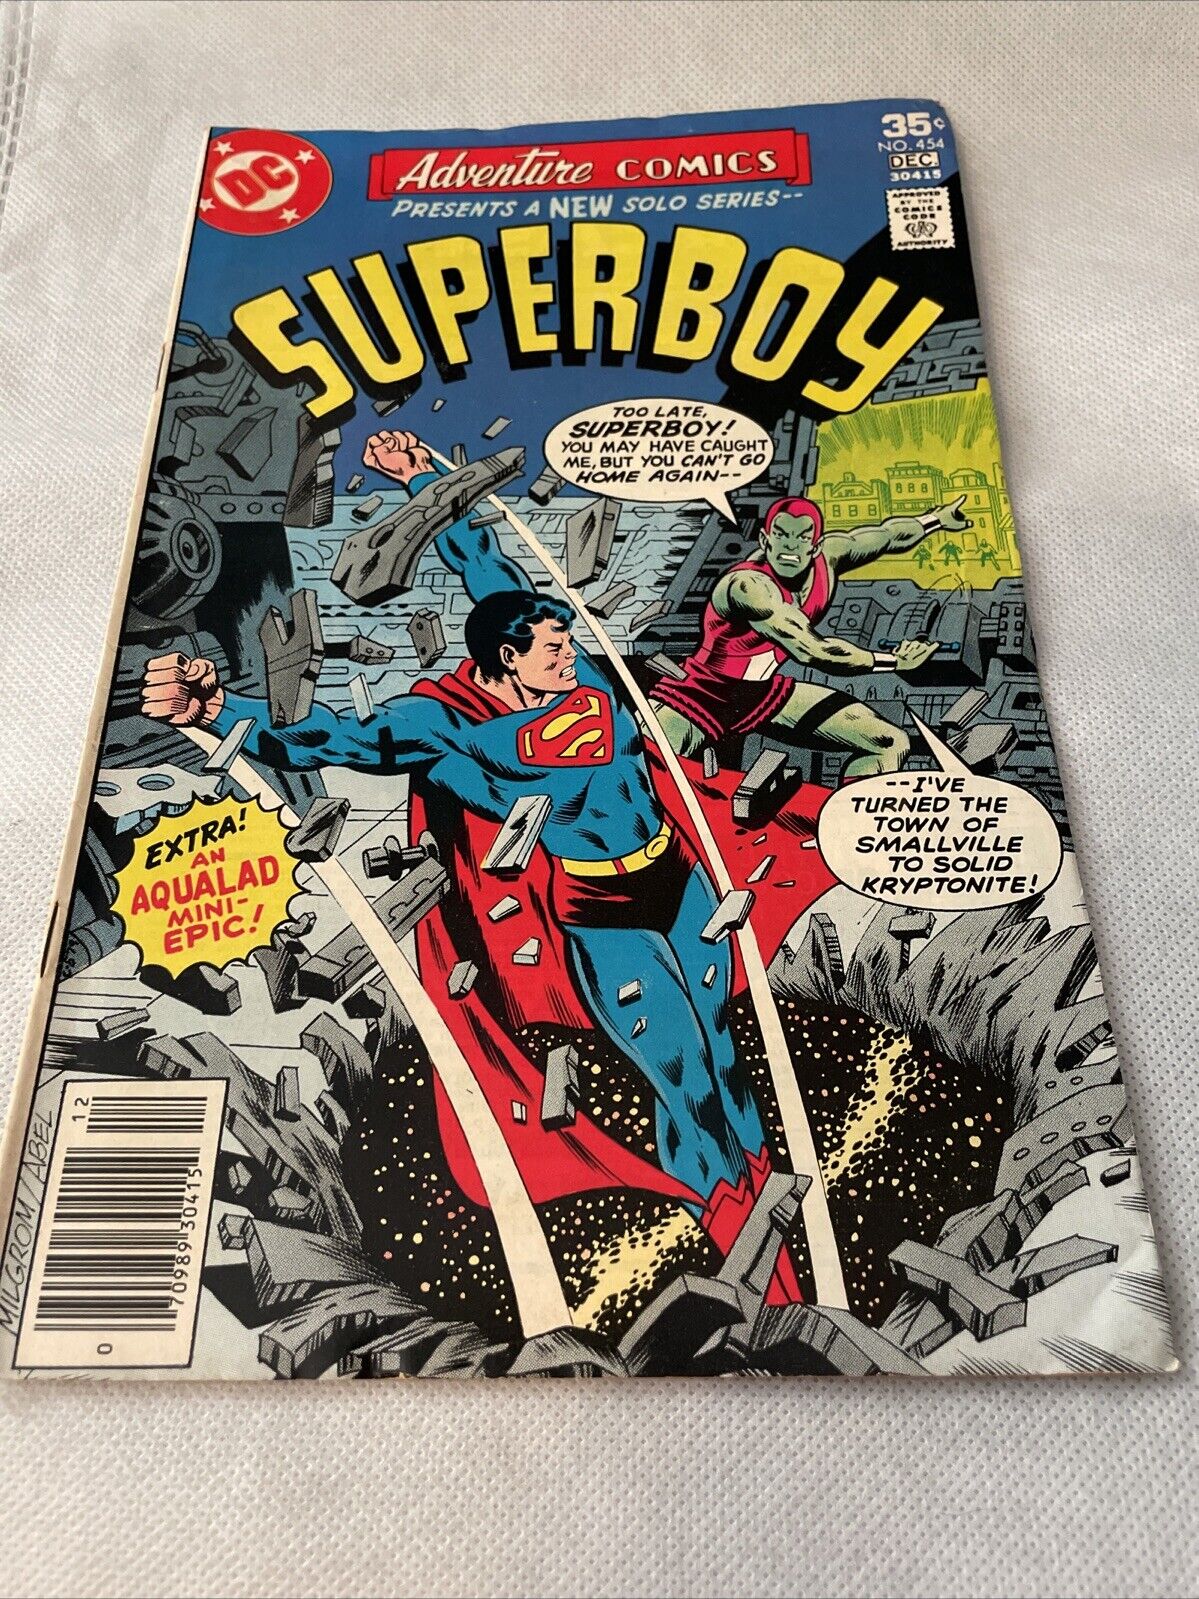 DC Comics Adventure Comics presents Superboy #454 (December 1977)